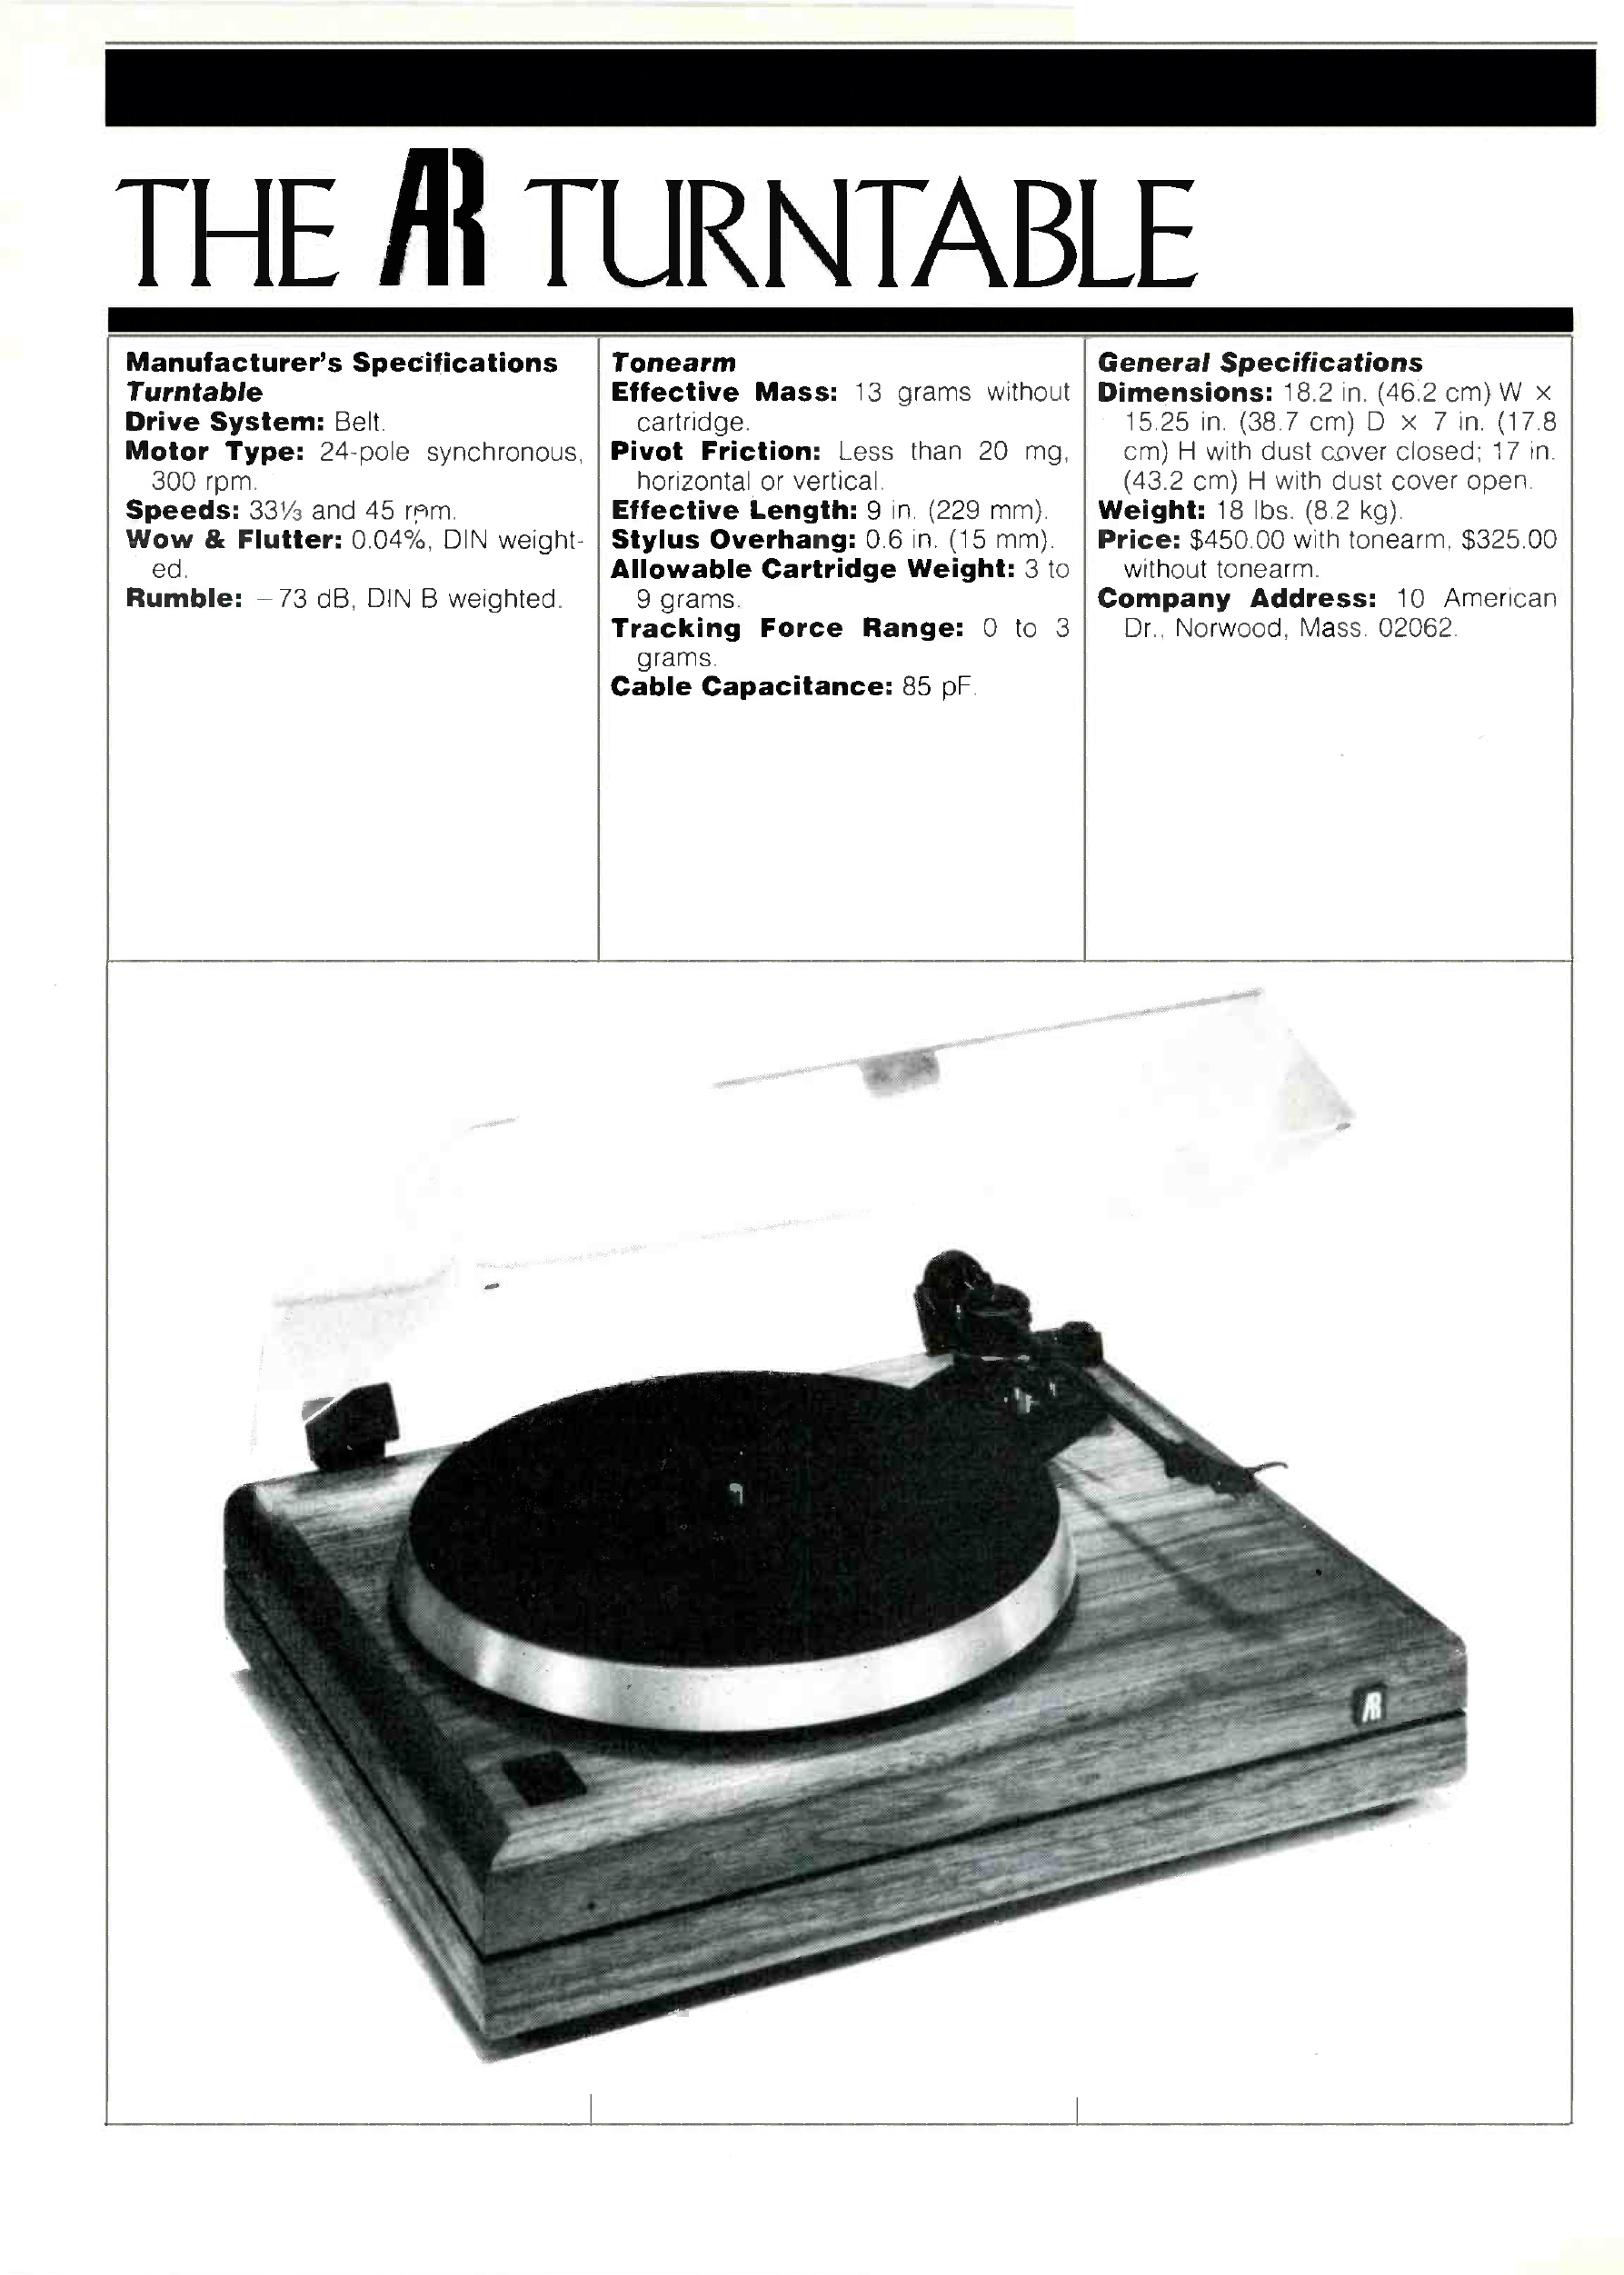 AR-Turntable-Werbung-1984.jpg